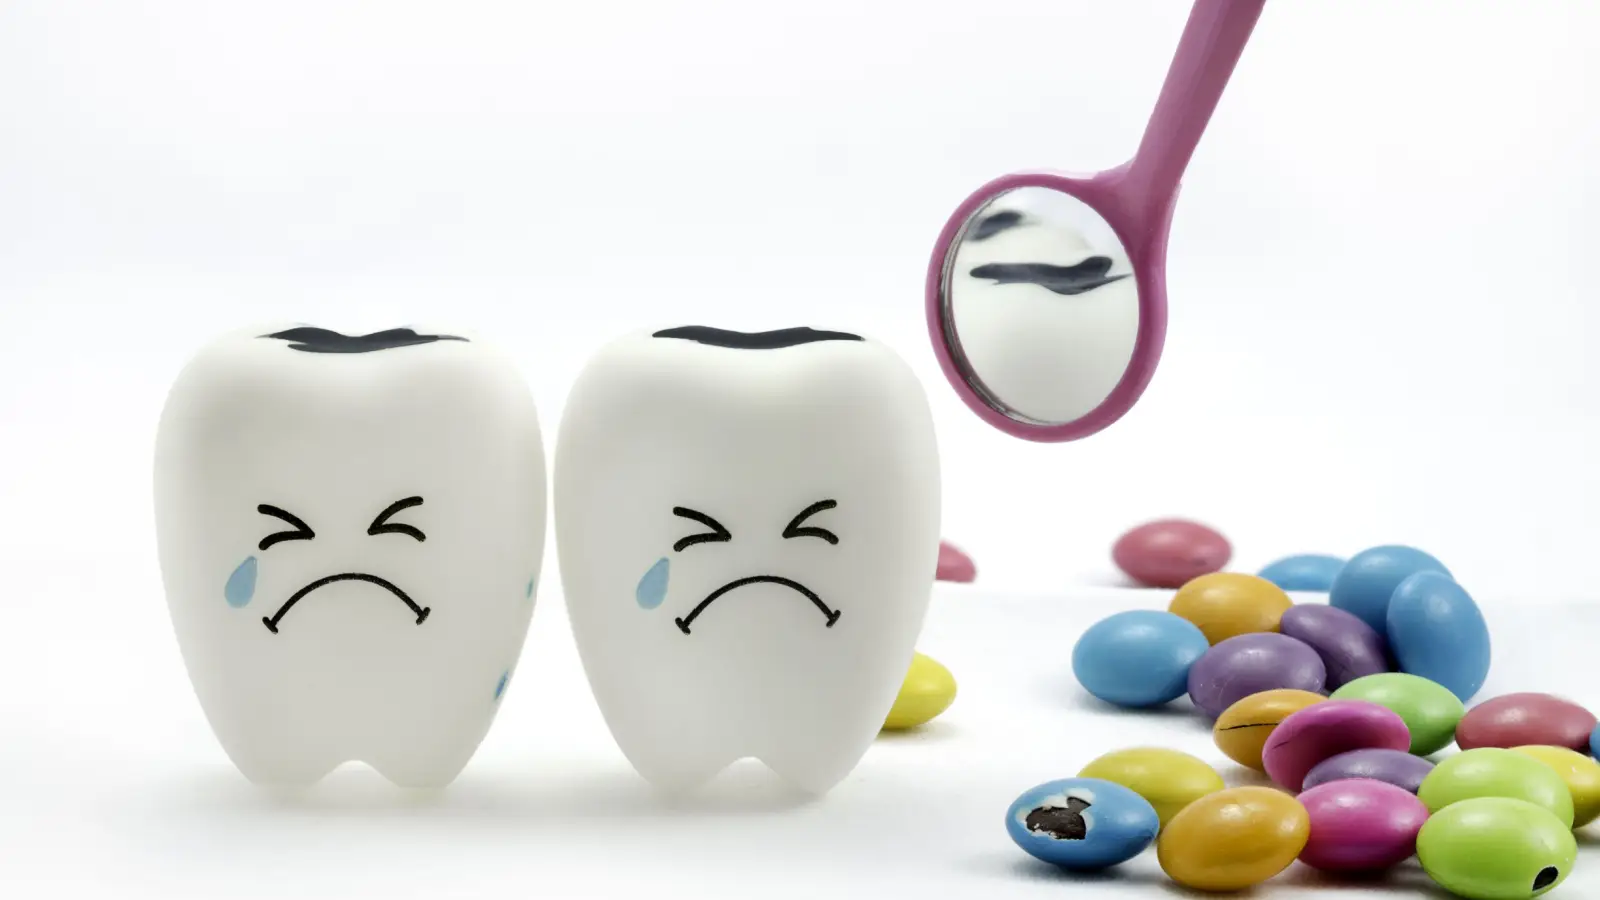 ما هي أعراض تسوس الأسنان؟ وكيف يمكن علاجه؟